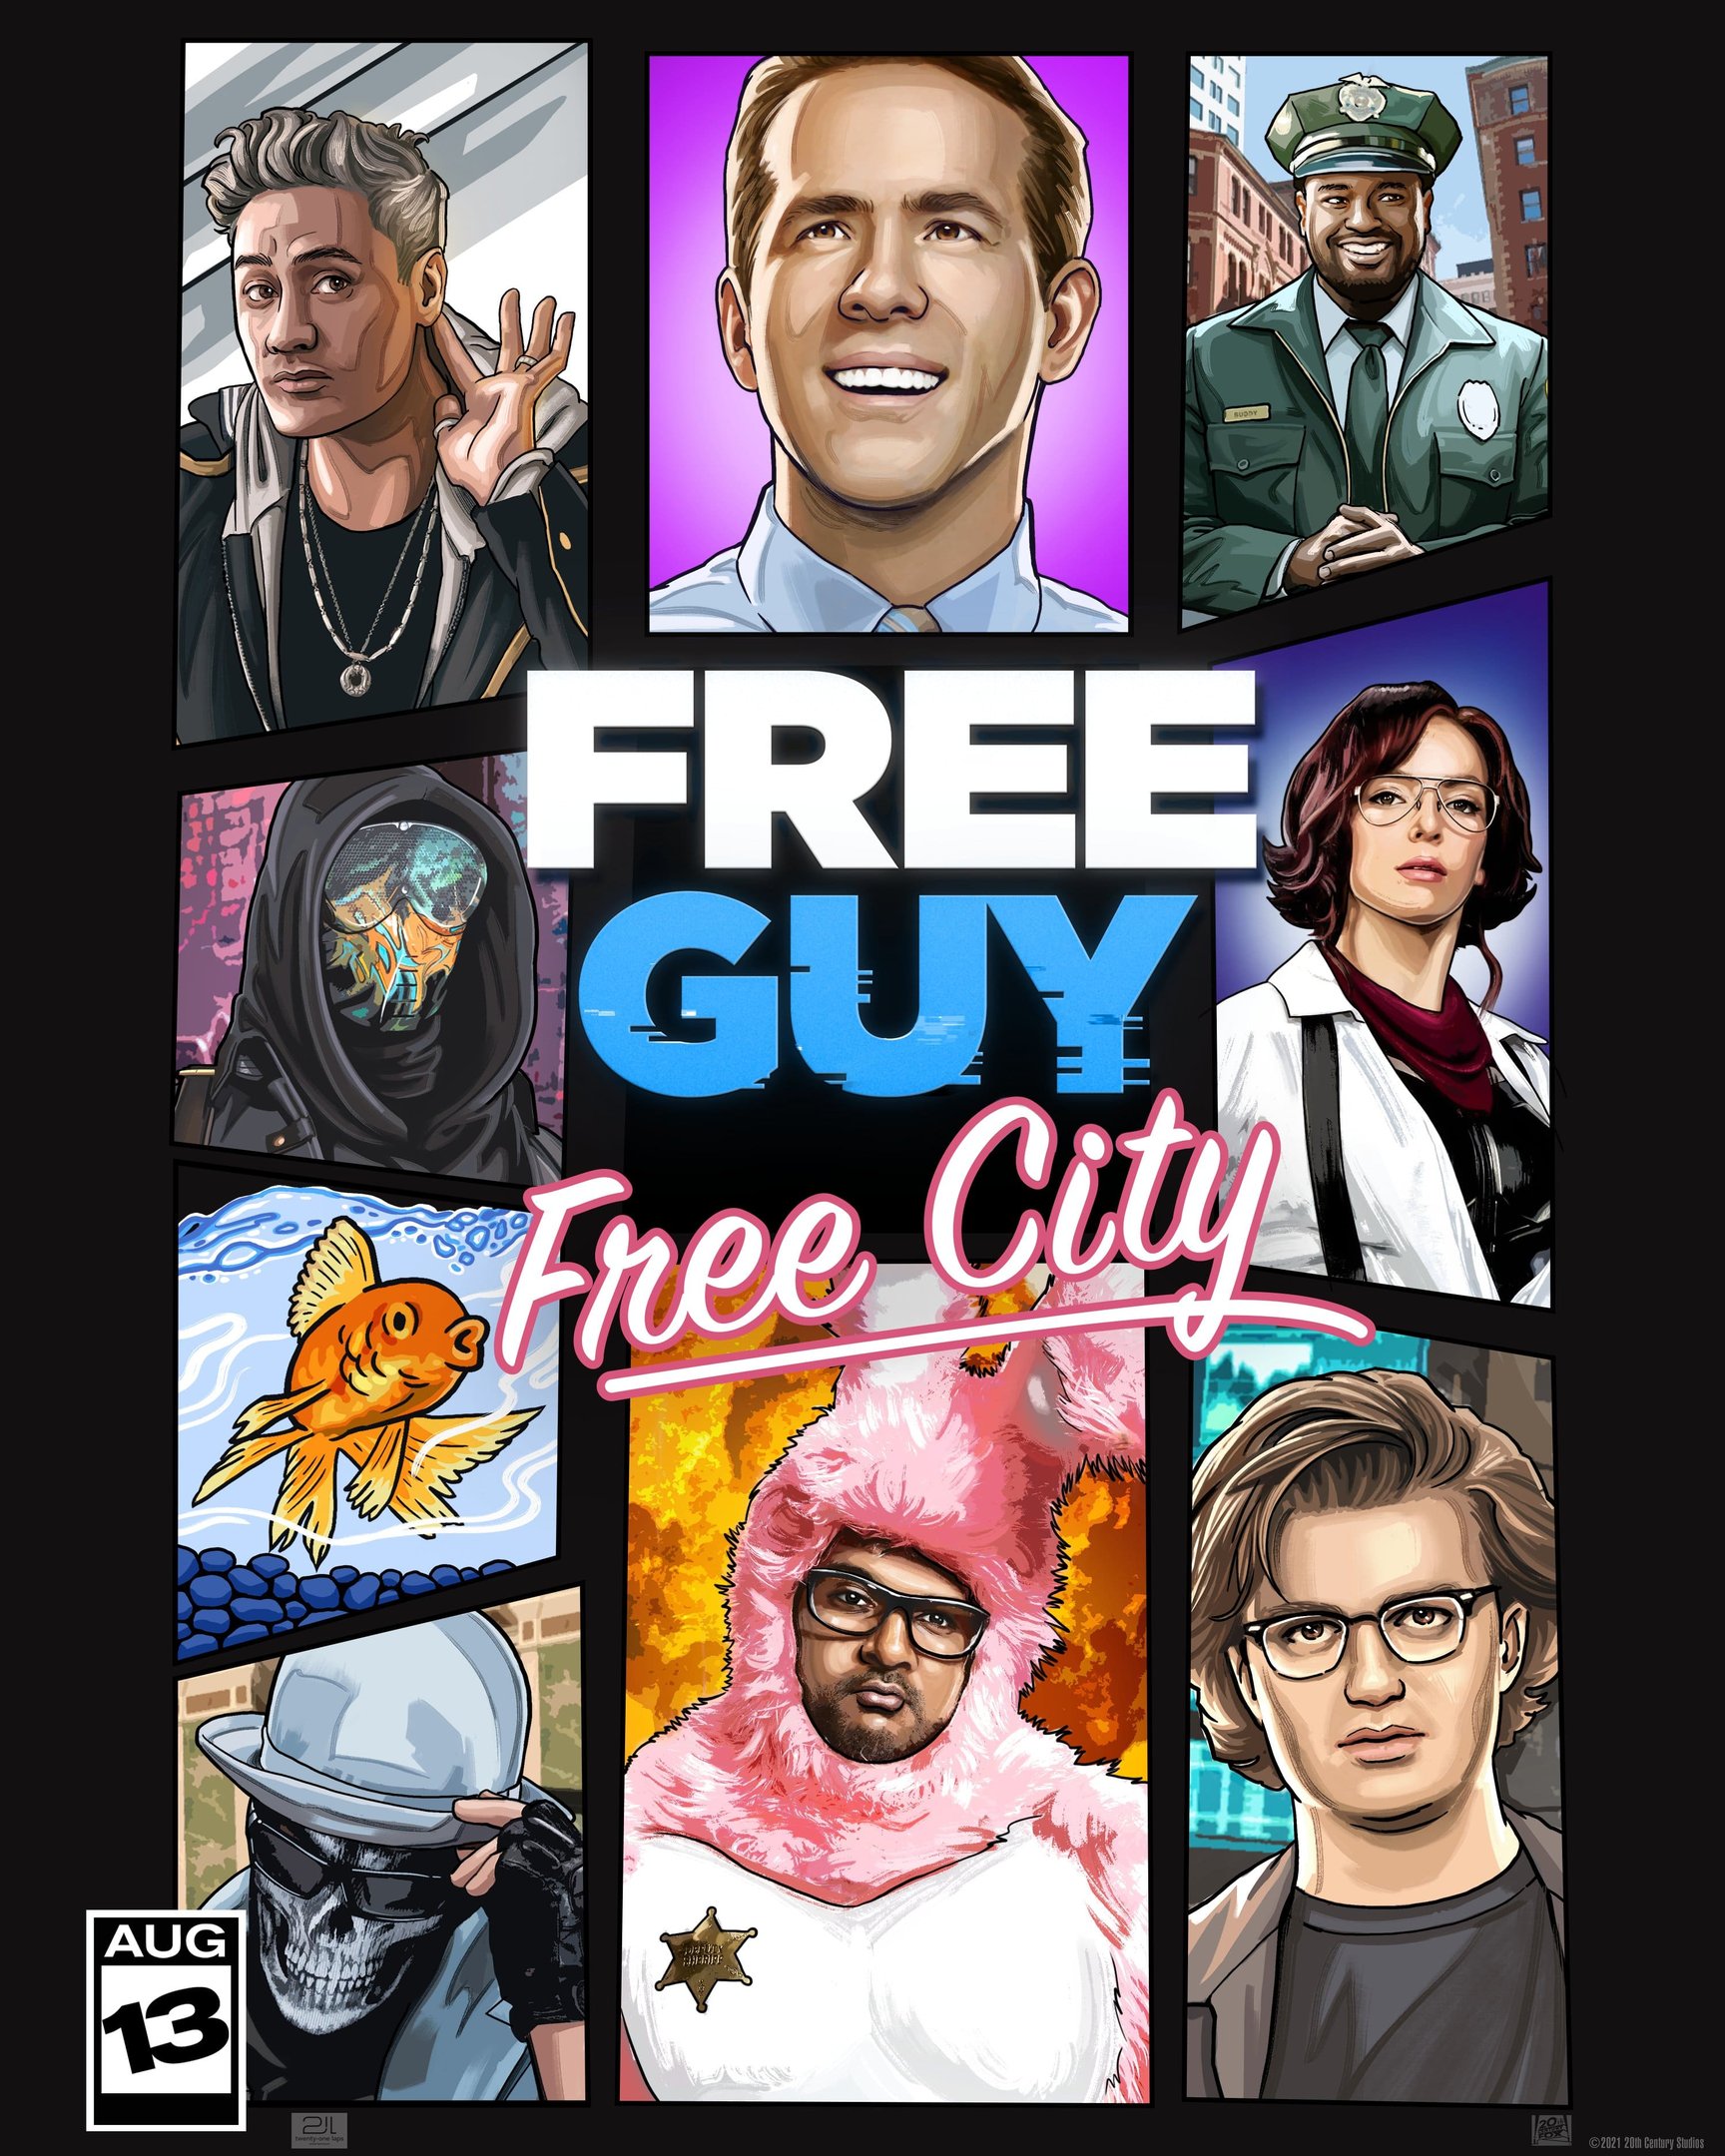 Free Guy – Assumindo o Controle ganha pôsteres inspirados em jogos  clássicos - NerdBunker